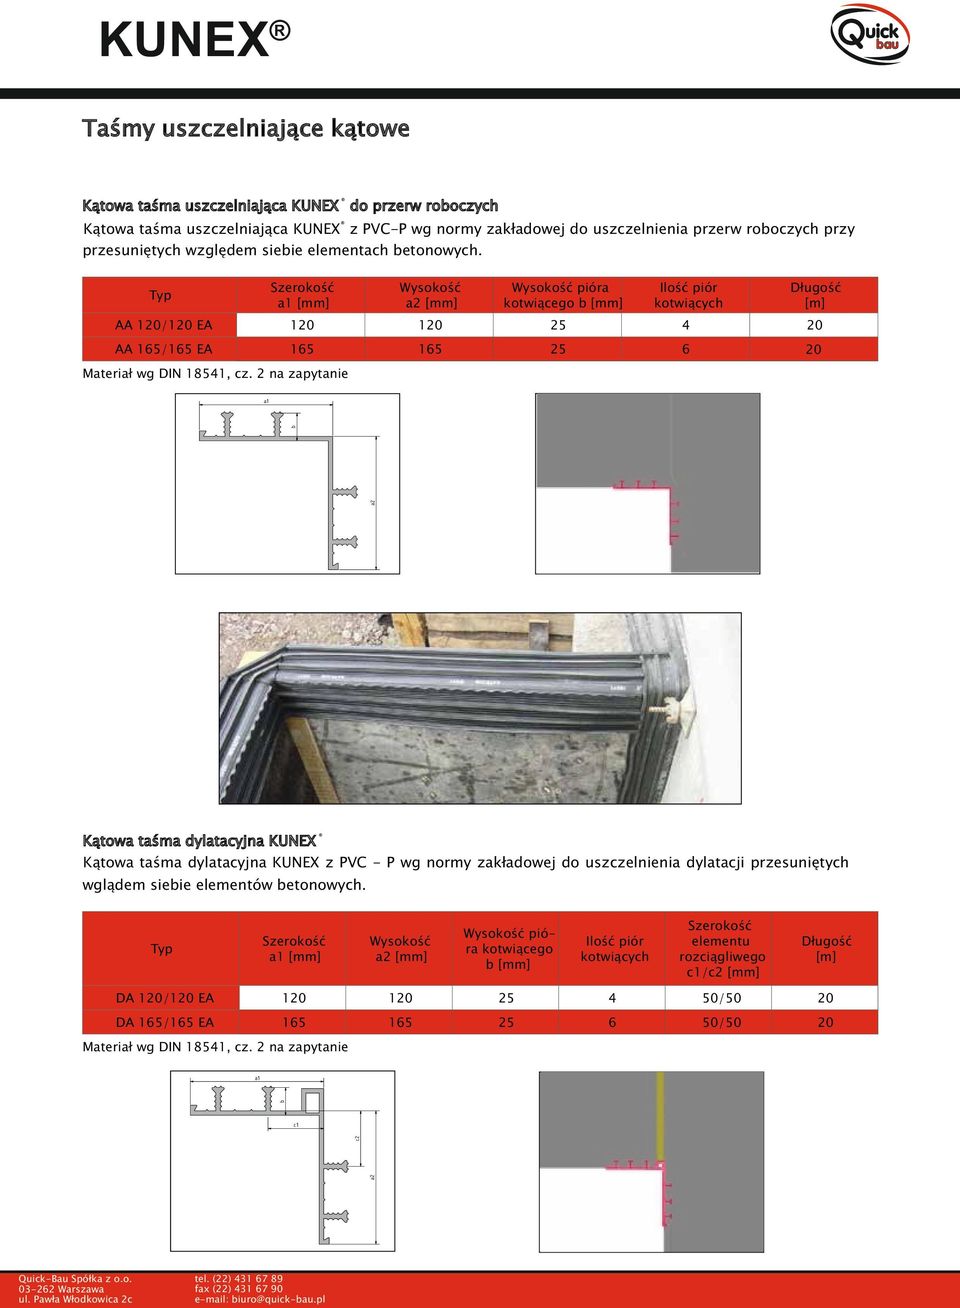 2 na zapytanie a2 b a1 Kątowa taśma dylatacyjna KUNEX Kątowa taśma dylatacyjna KUNEX z PVC - P wg normy zakładowej do uszczelnienia dylatacji przesuniętych wglądem siebie elementów betonowych.